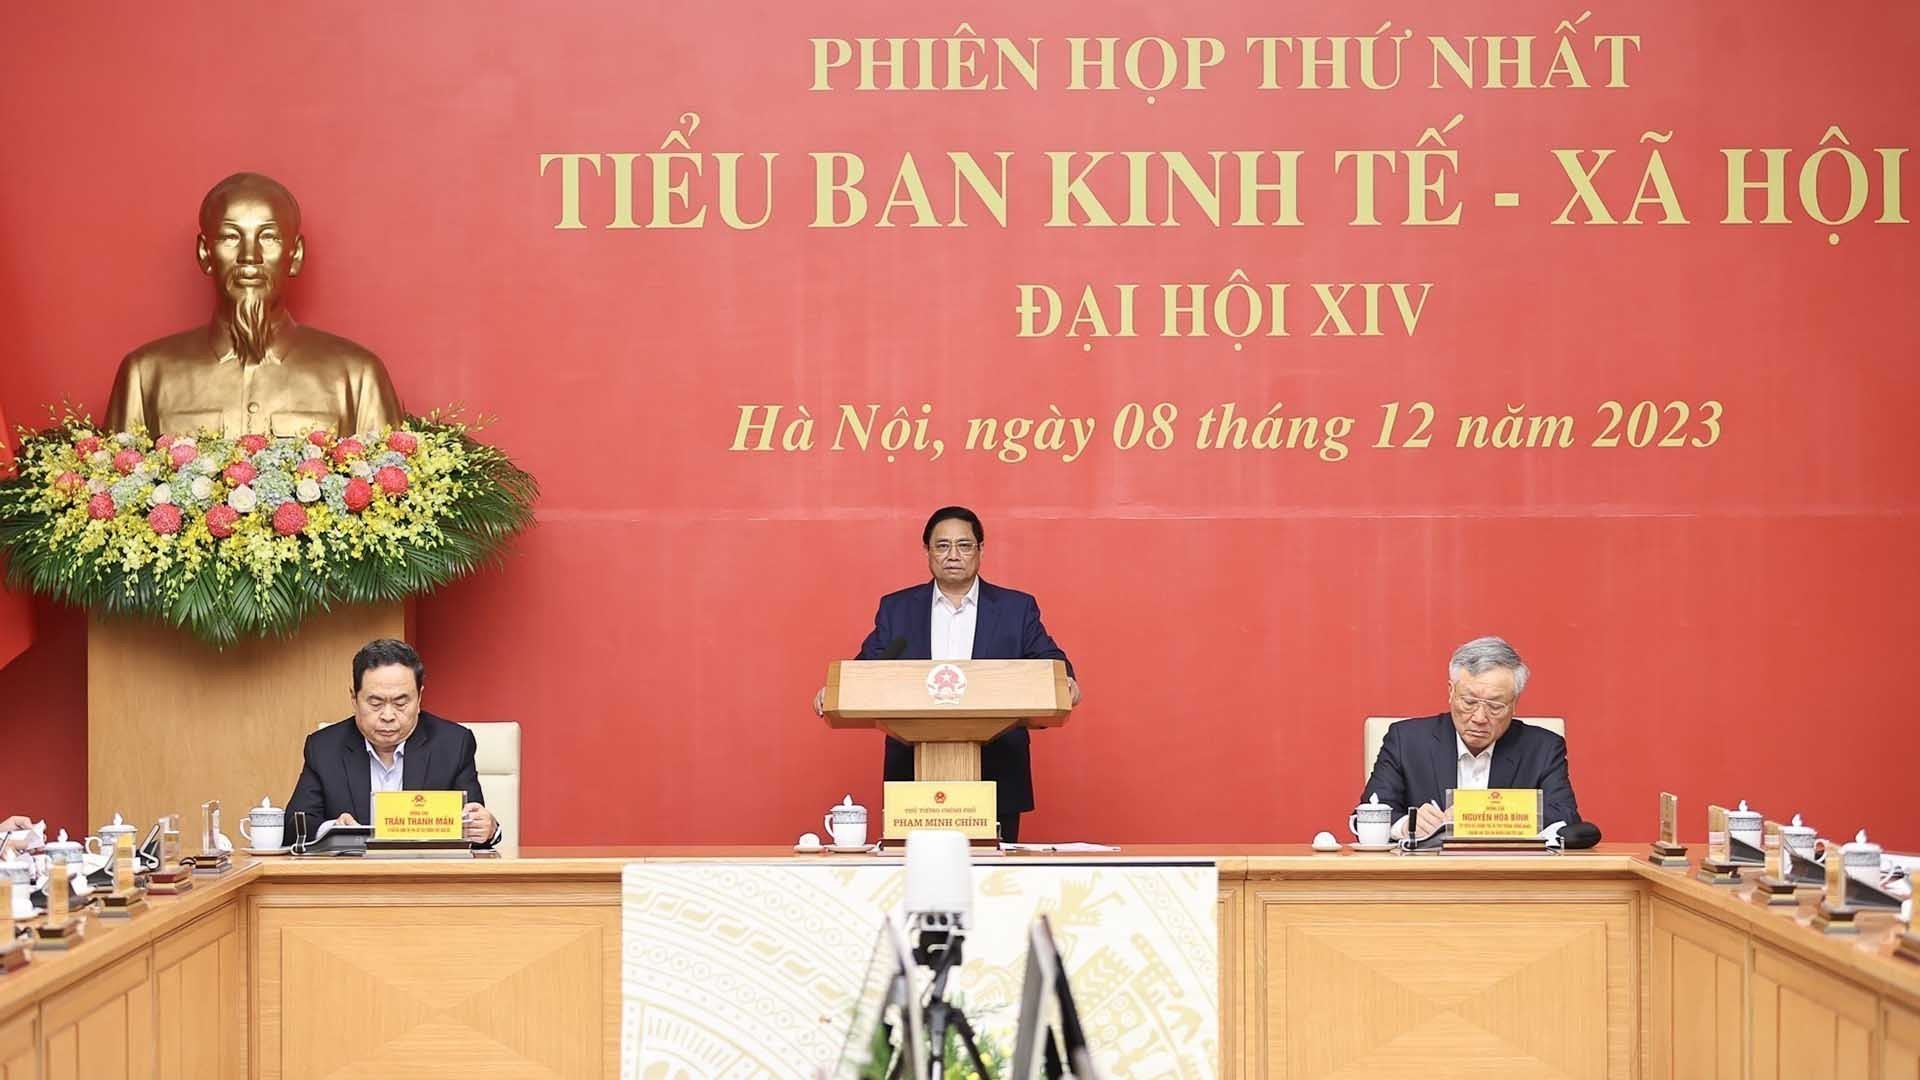 Thủ tướng Phạm Minh Chính chủ trì Phiên họp thứ nhất Tiểu ban Kinh tế - xã hội Đại hội XIV của Đảng